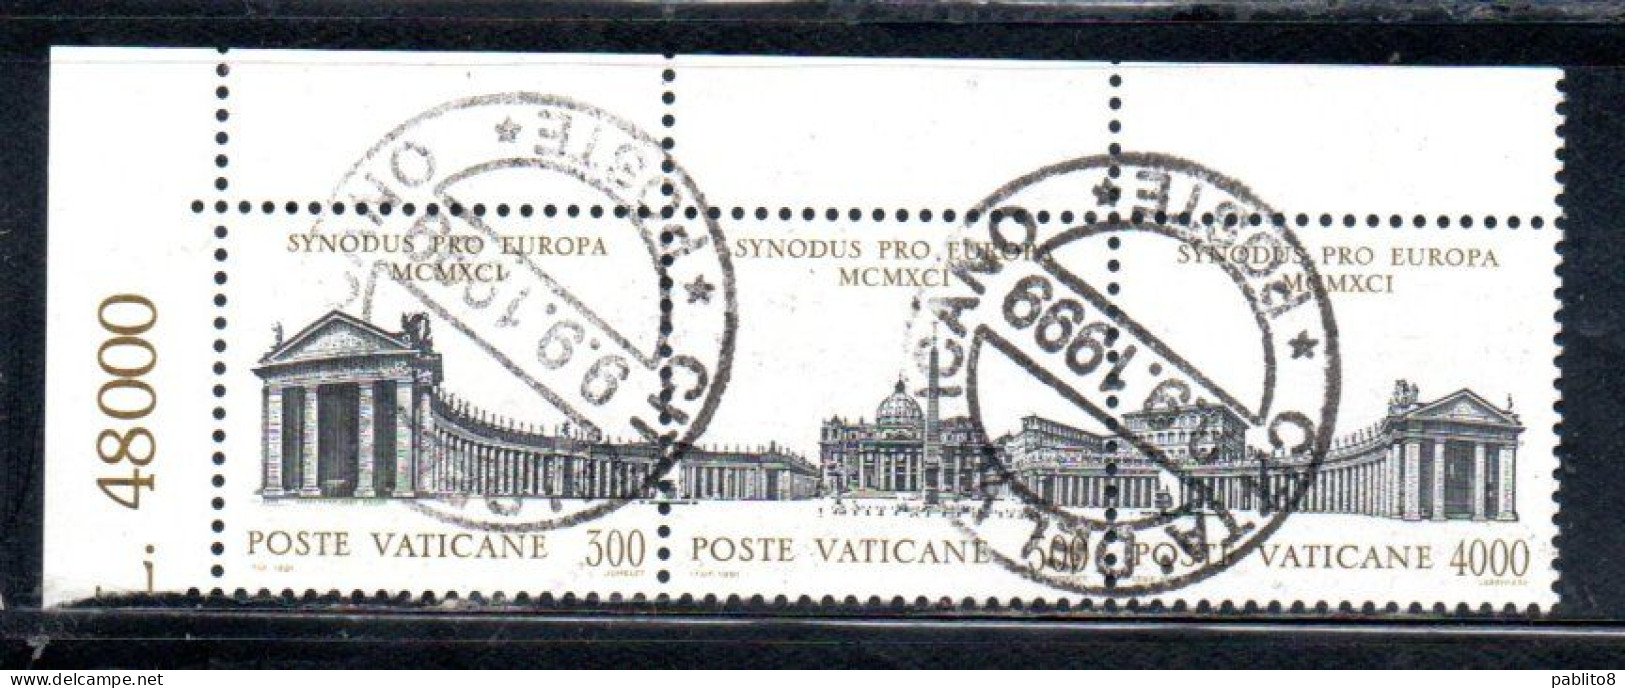 VATICANO VATICAN VATIKAN 1991 ASSEMBLEA SPECIALE PER L'EUROPA SINODO DEI VESCOVI SERIE COMPLETA COMPLETE SET USATA USED - Used Stamps